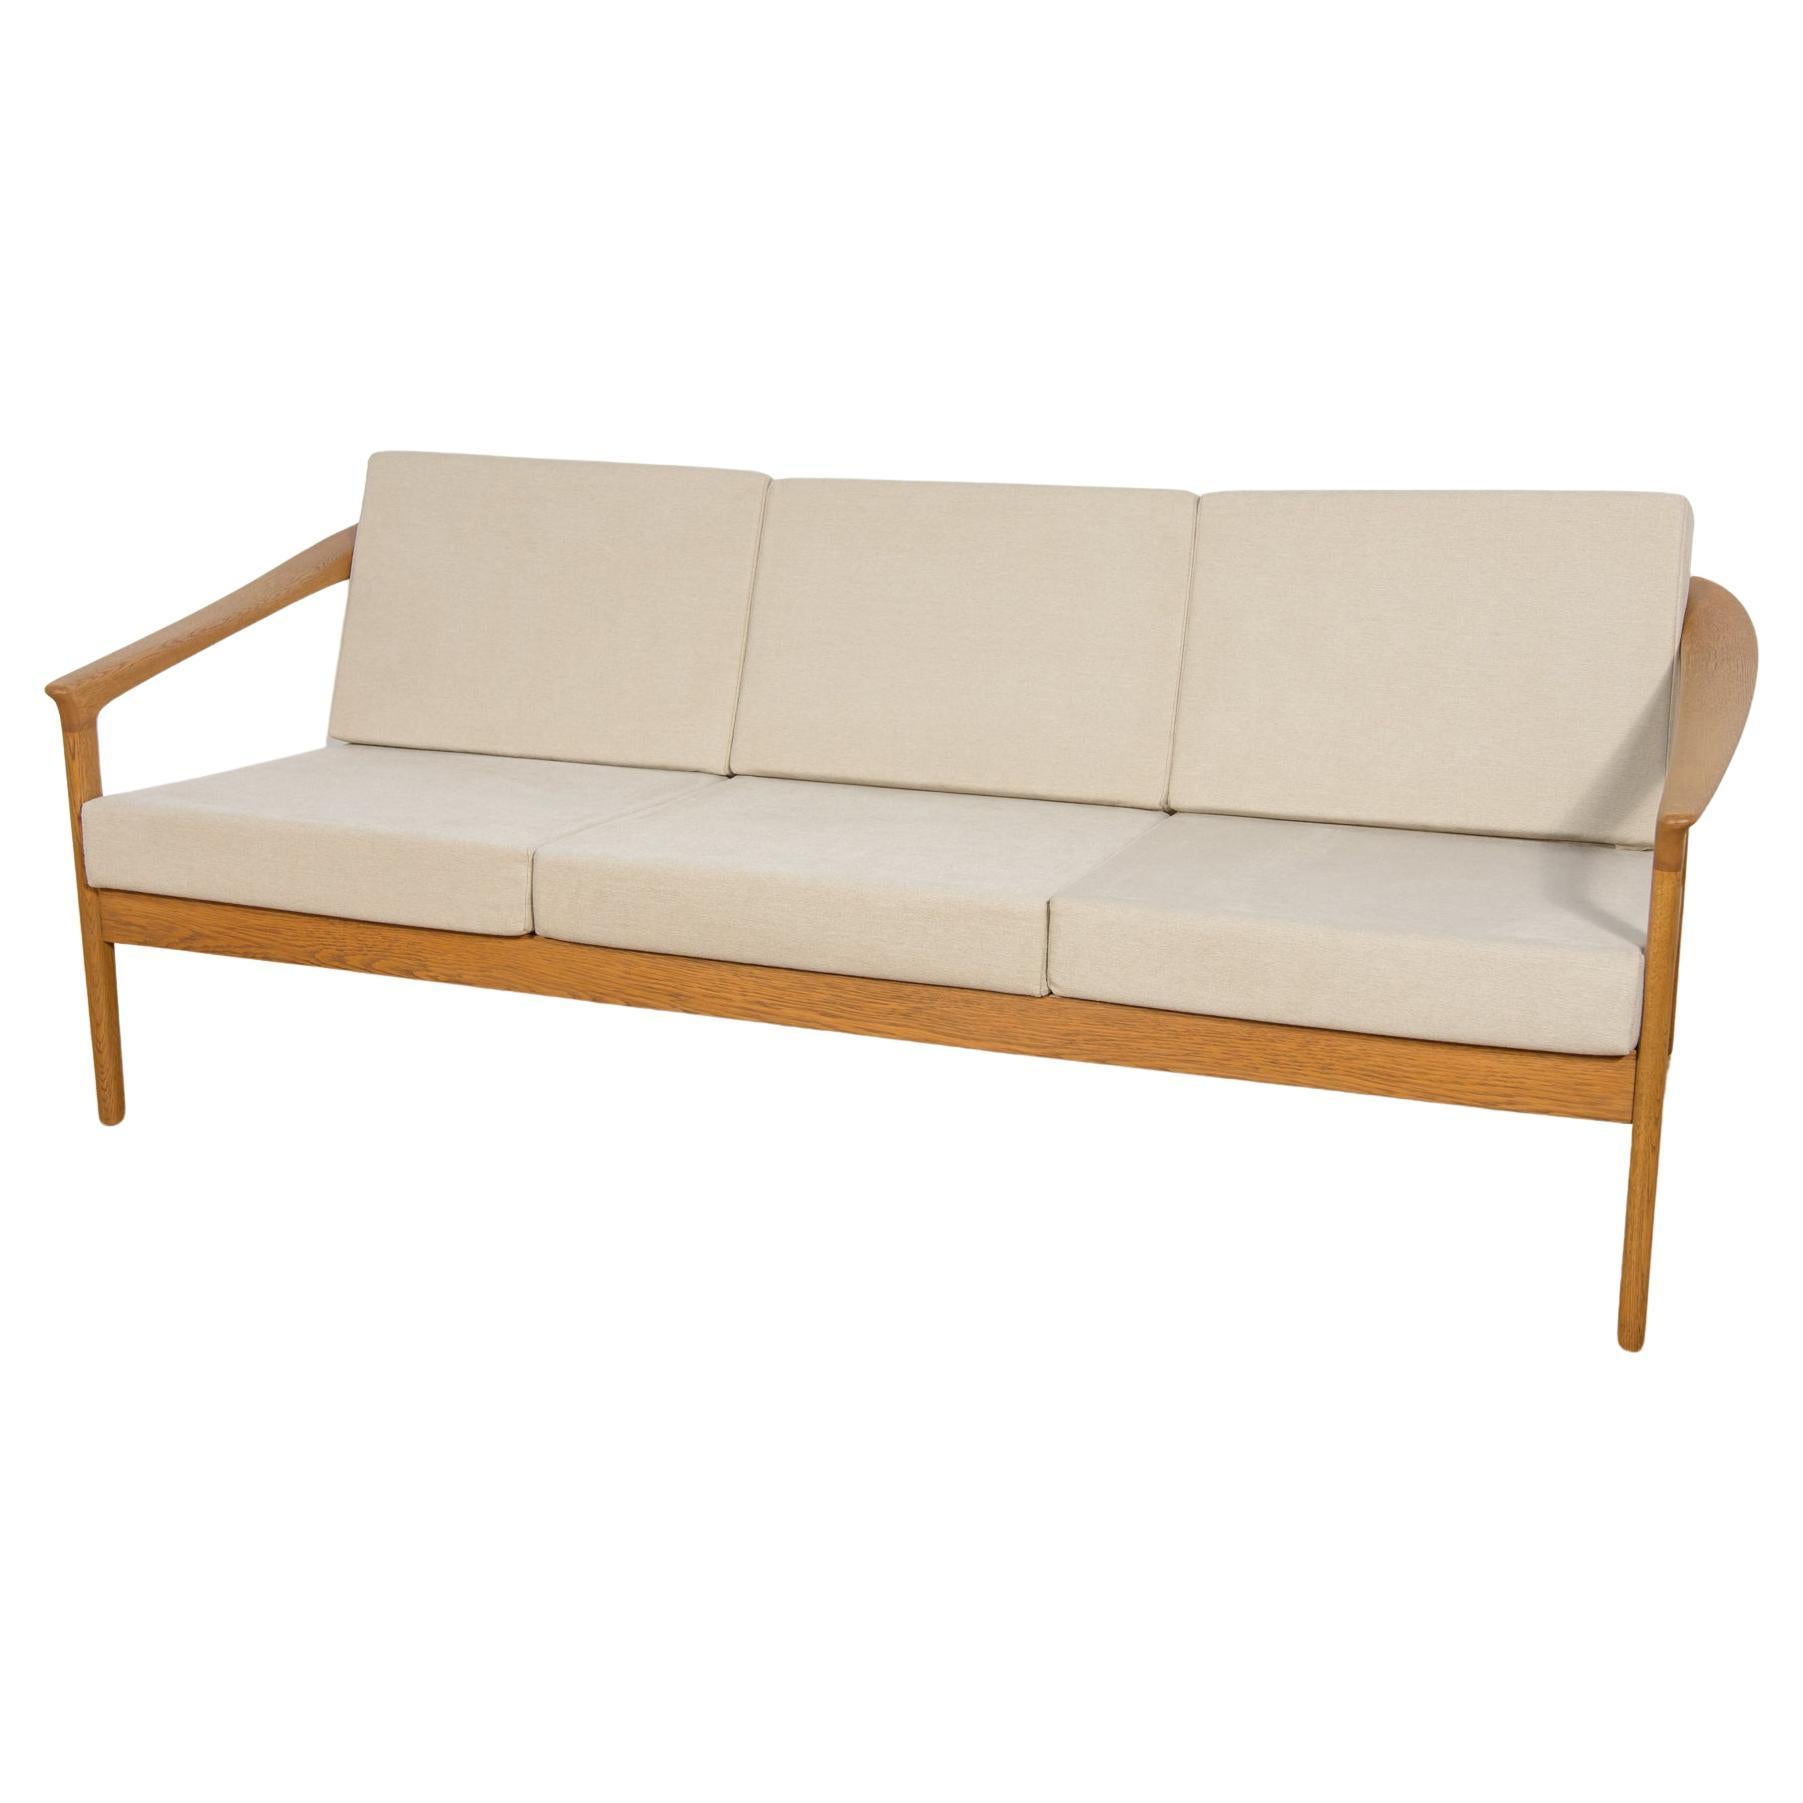 Mid Century Sofa Monterey /5-161 by Folke Ohlsson for Bodafors, 1960 For Sale